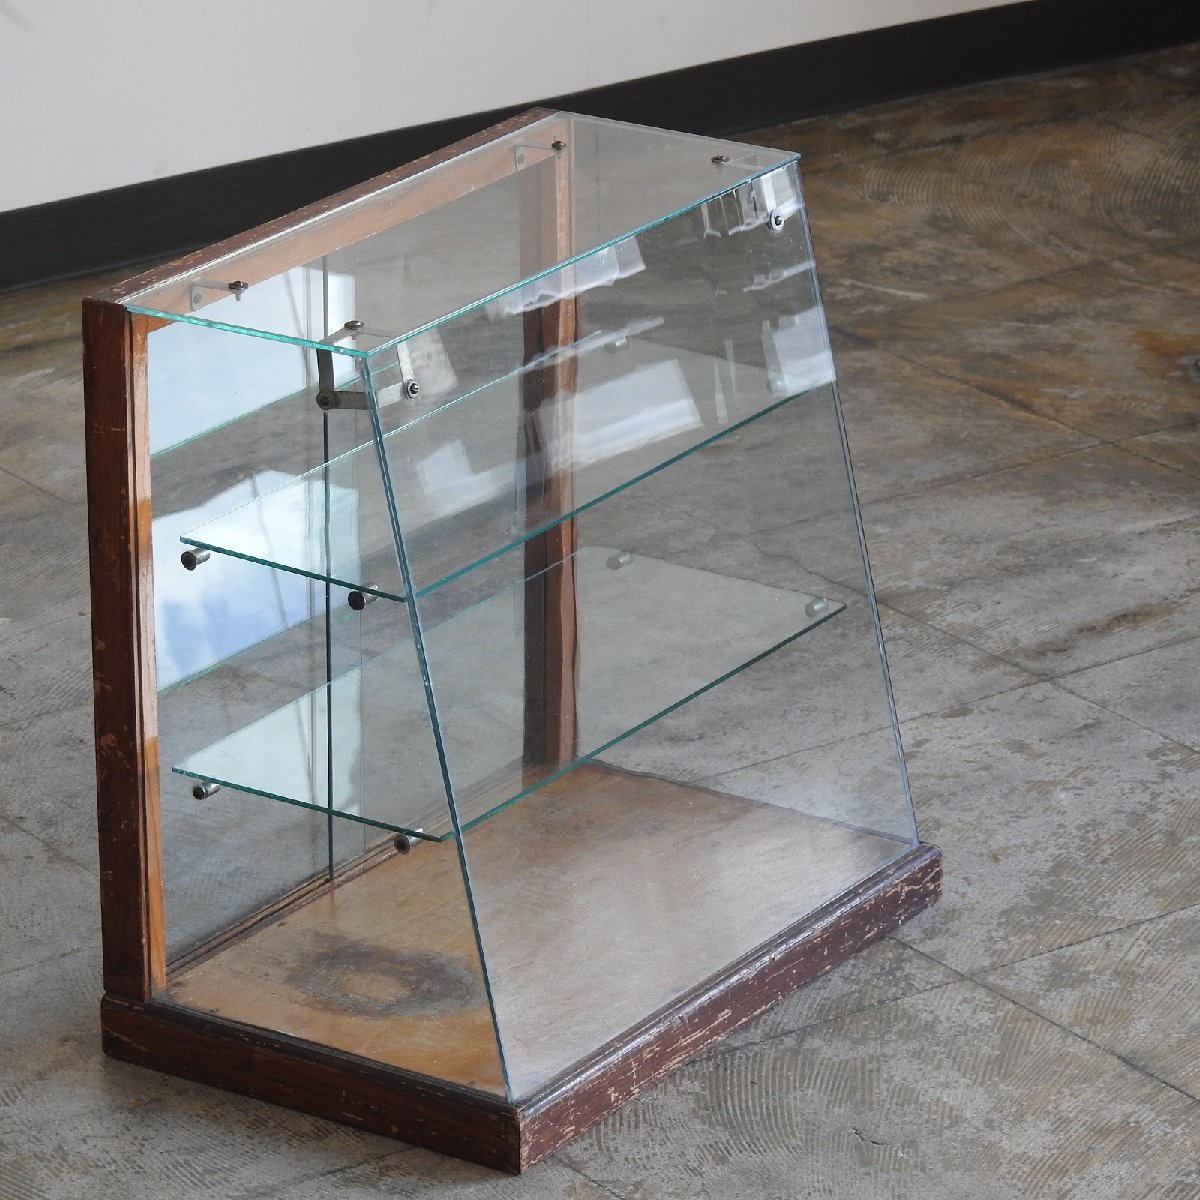 ふるい木枠の全面ガラス 前ナナメの卓上ショーケース HK-a-02286 / 古道具 無垢材 ガラスケース ガラス戸棚 パンケース